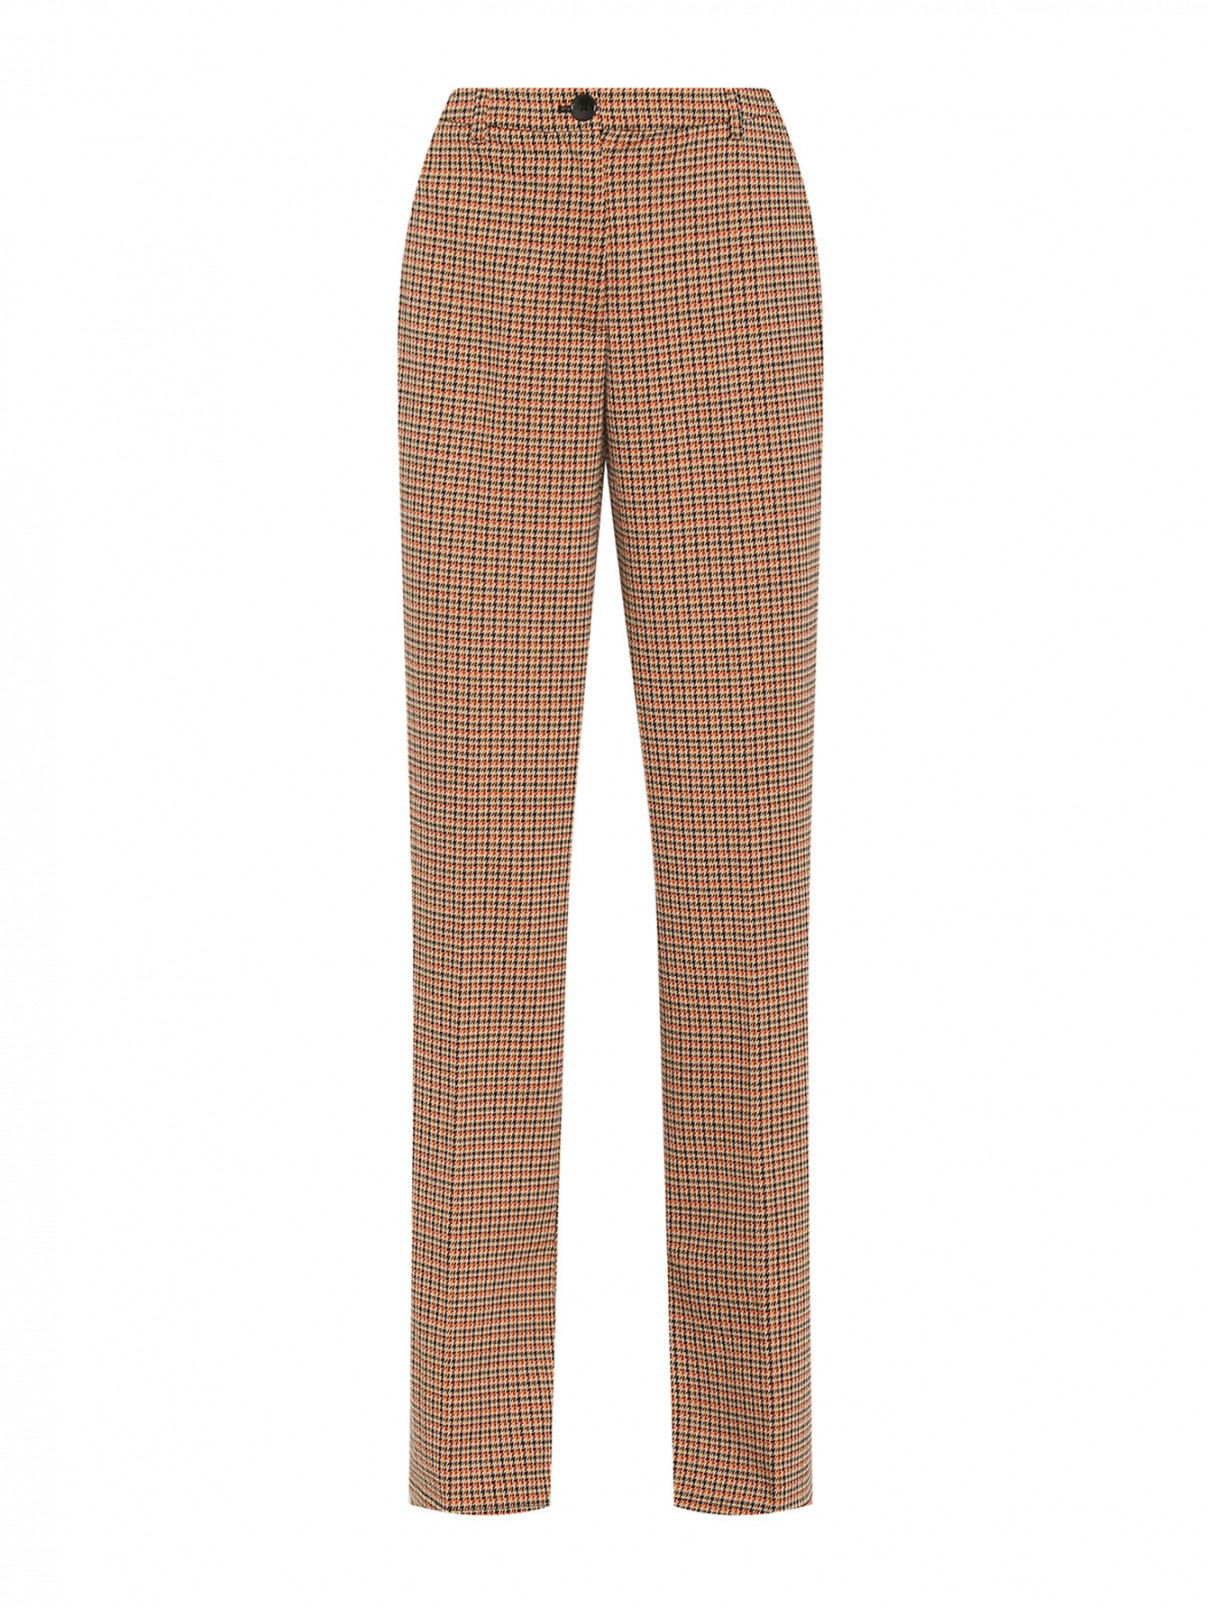 Расклешенные брюки с разрезами Essentiel Antwerp  –  Общий вид  – Цвет:  Узор